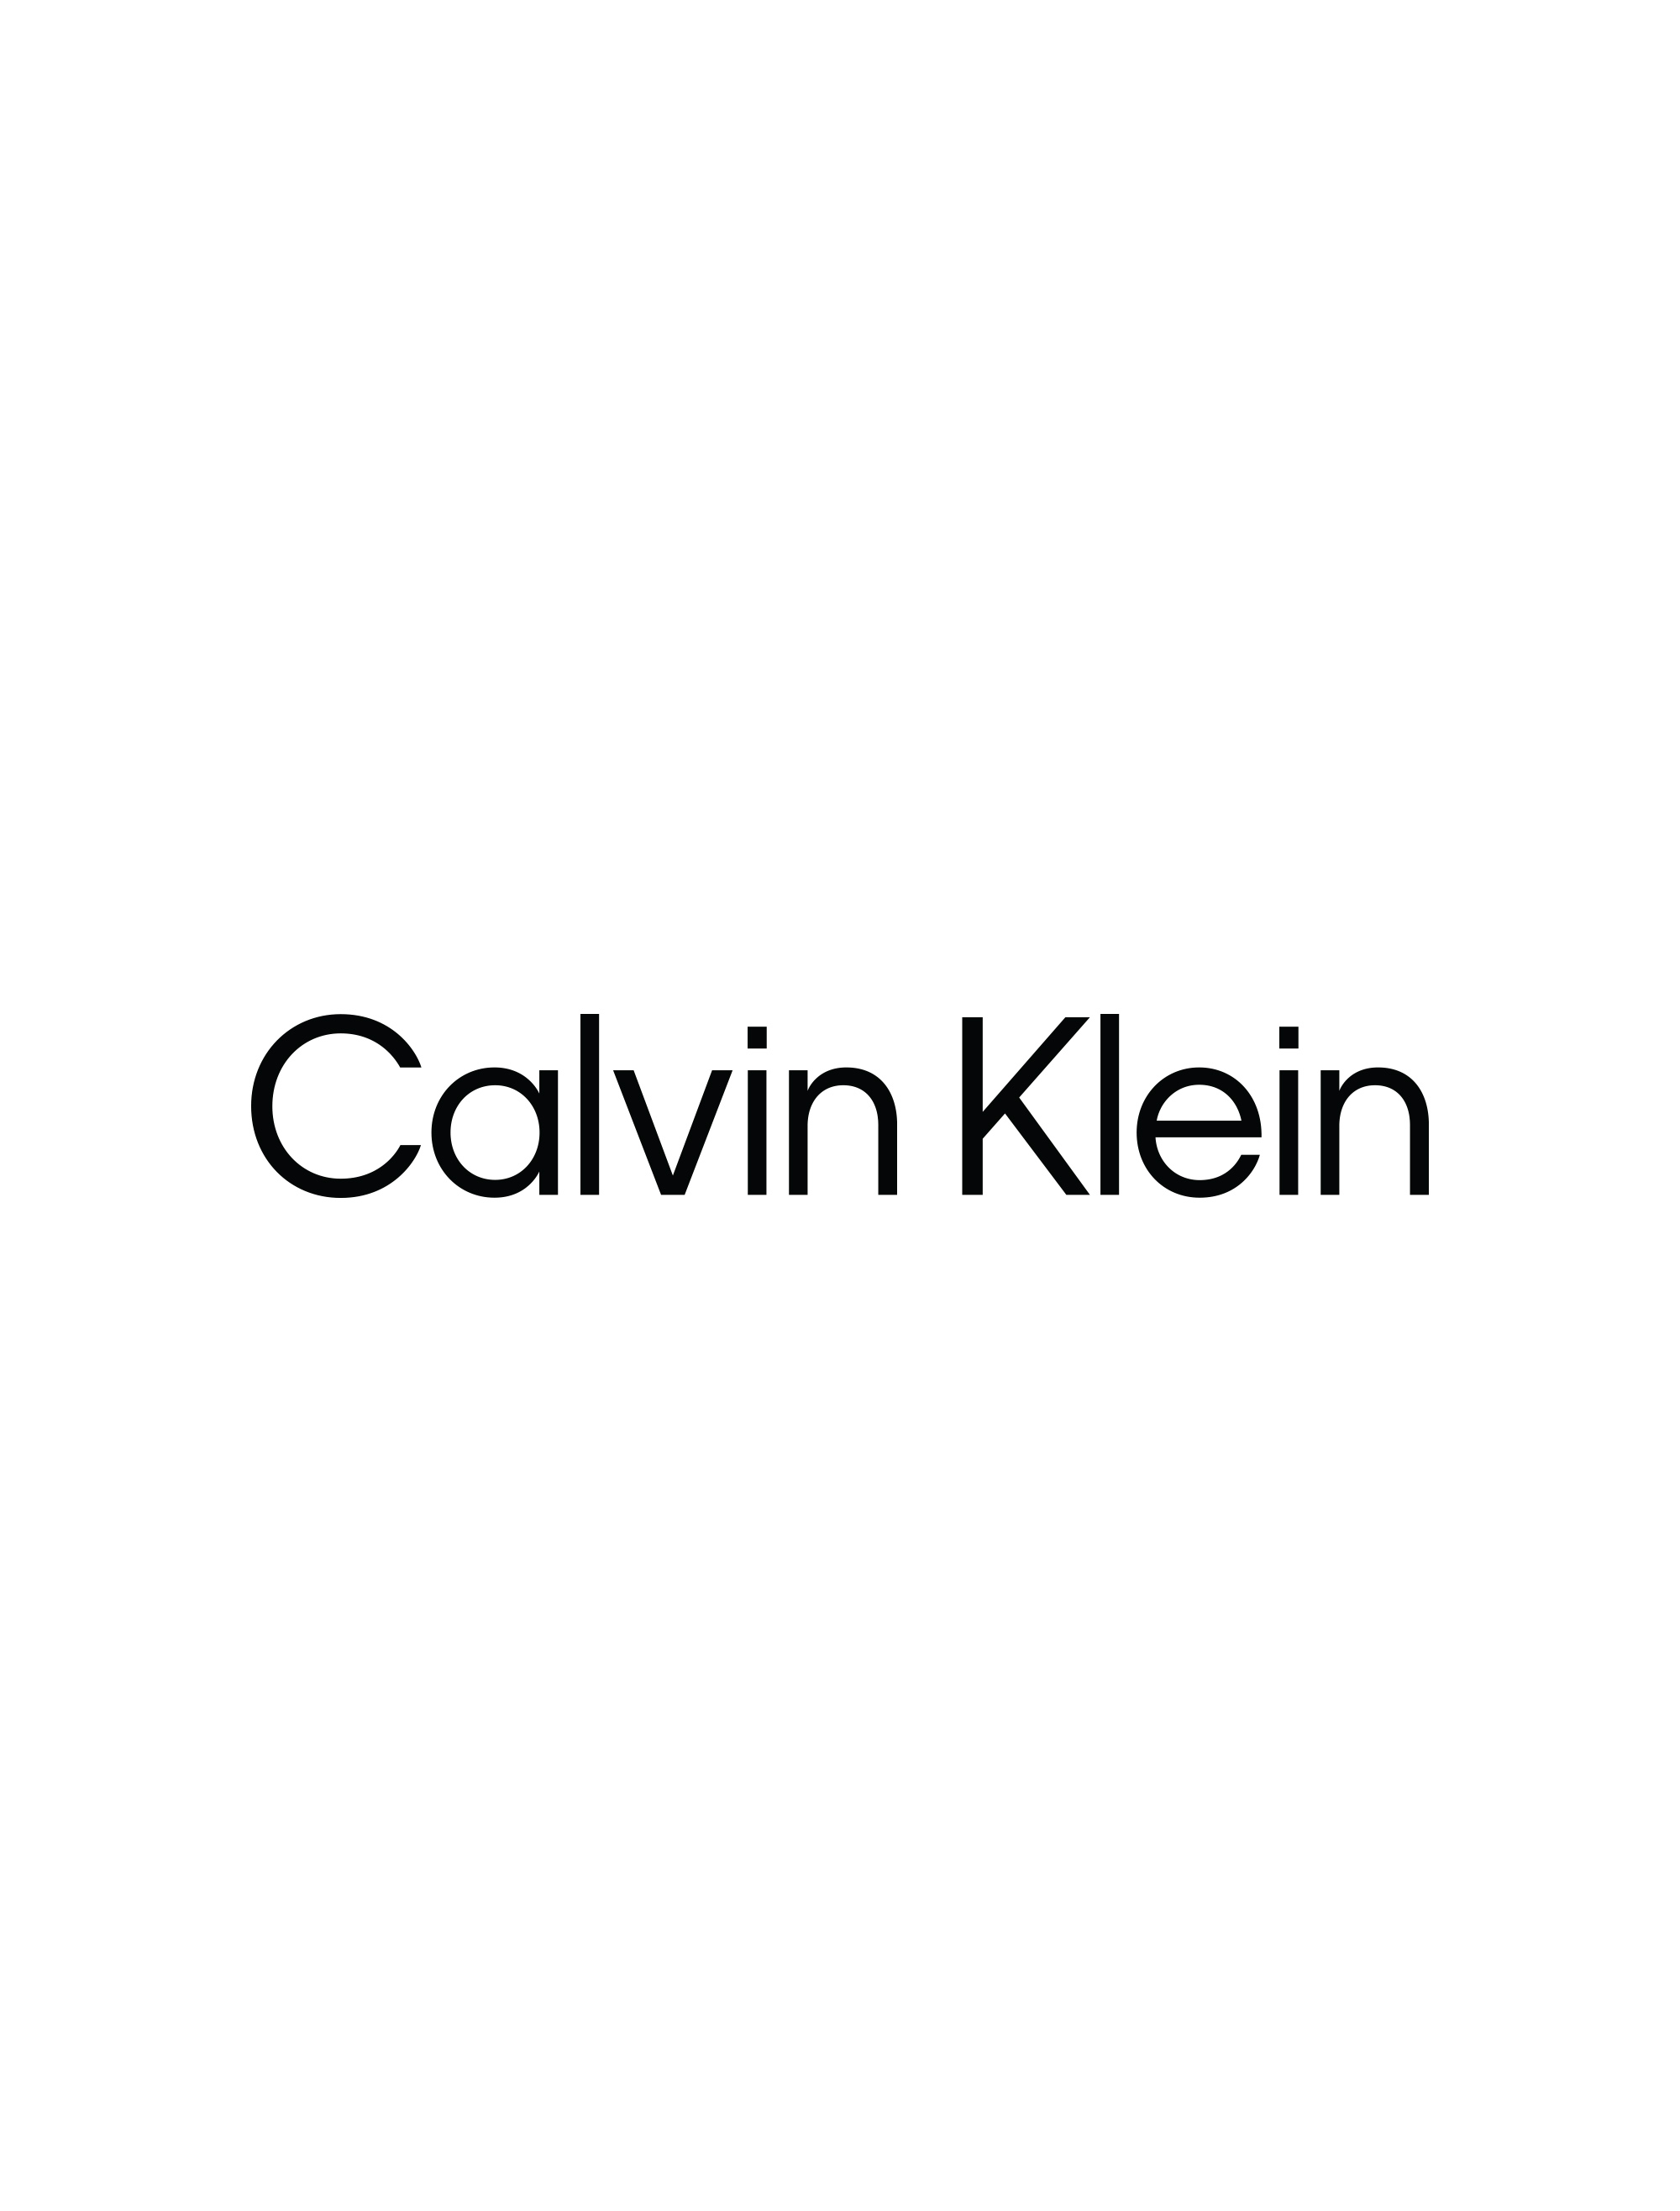 Calvin Klein Hello Kitty Boxers, Hello Kitty Clothing Children